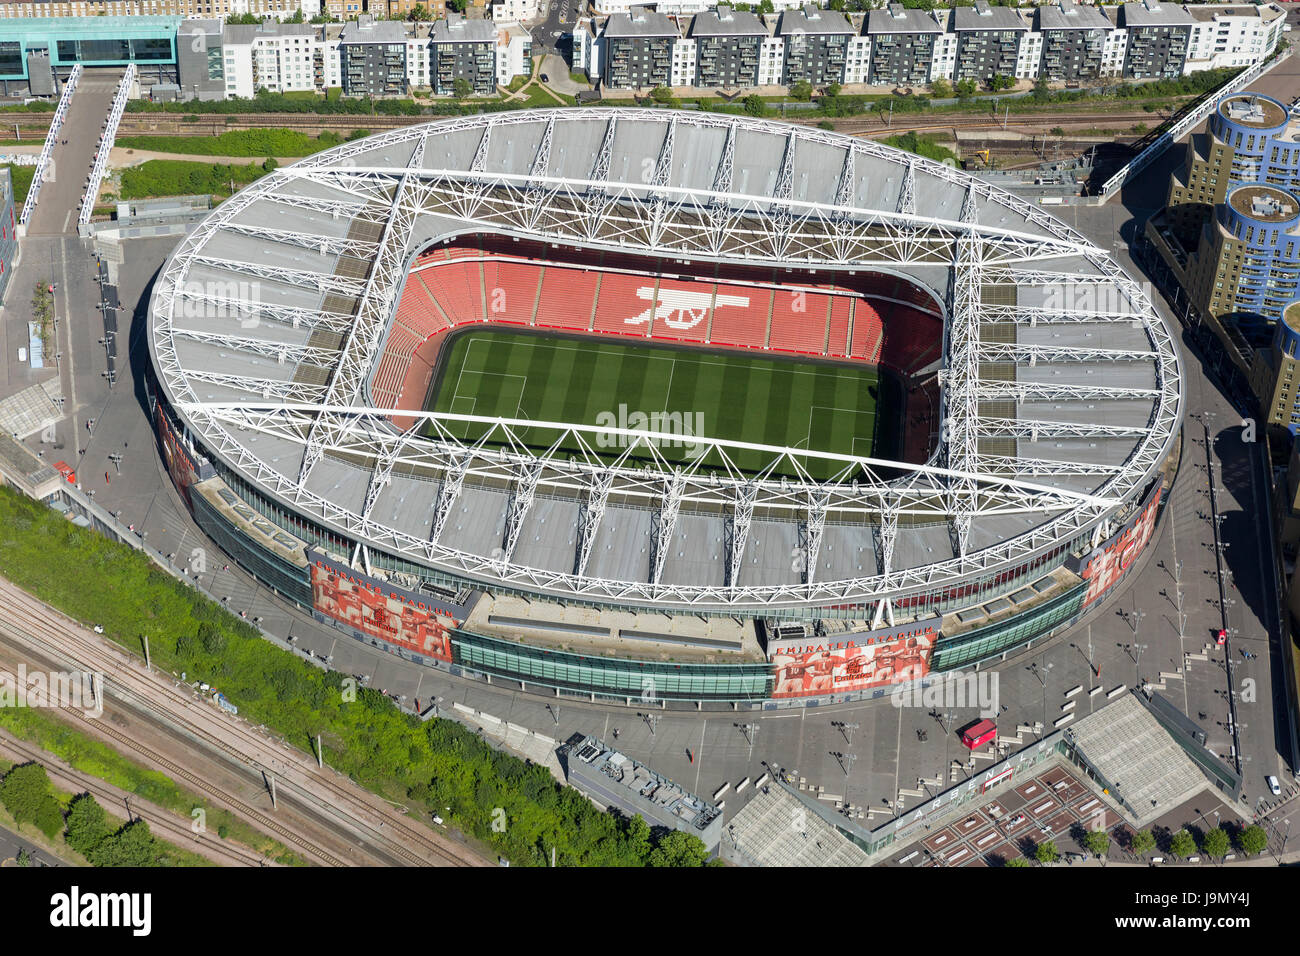 L'Unis stade de Highbury, Londres, Angleterre, et l'accueil du Premier Ministre Leagues, Arsenal Football Club. Capacité de plus de 60 000. Banque D'Images